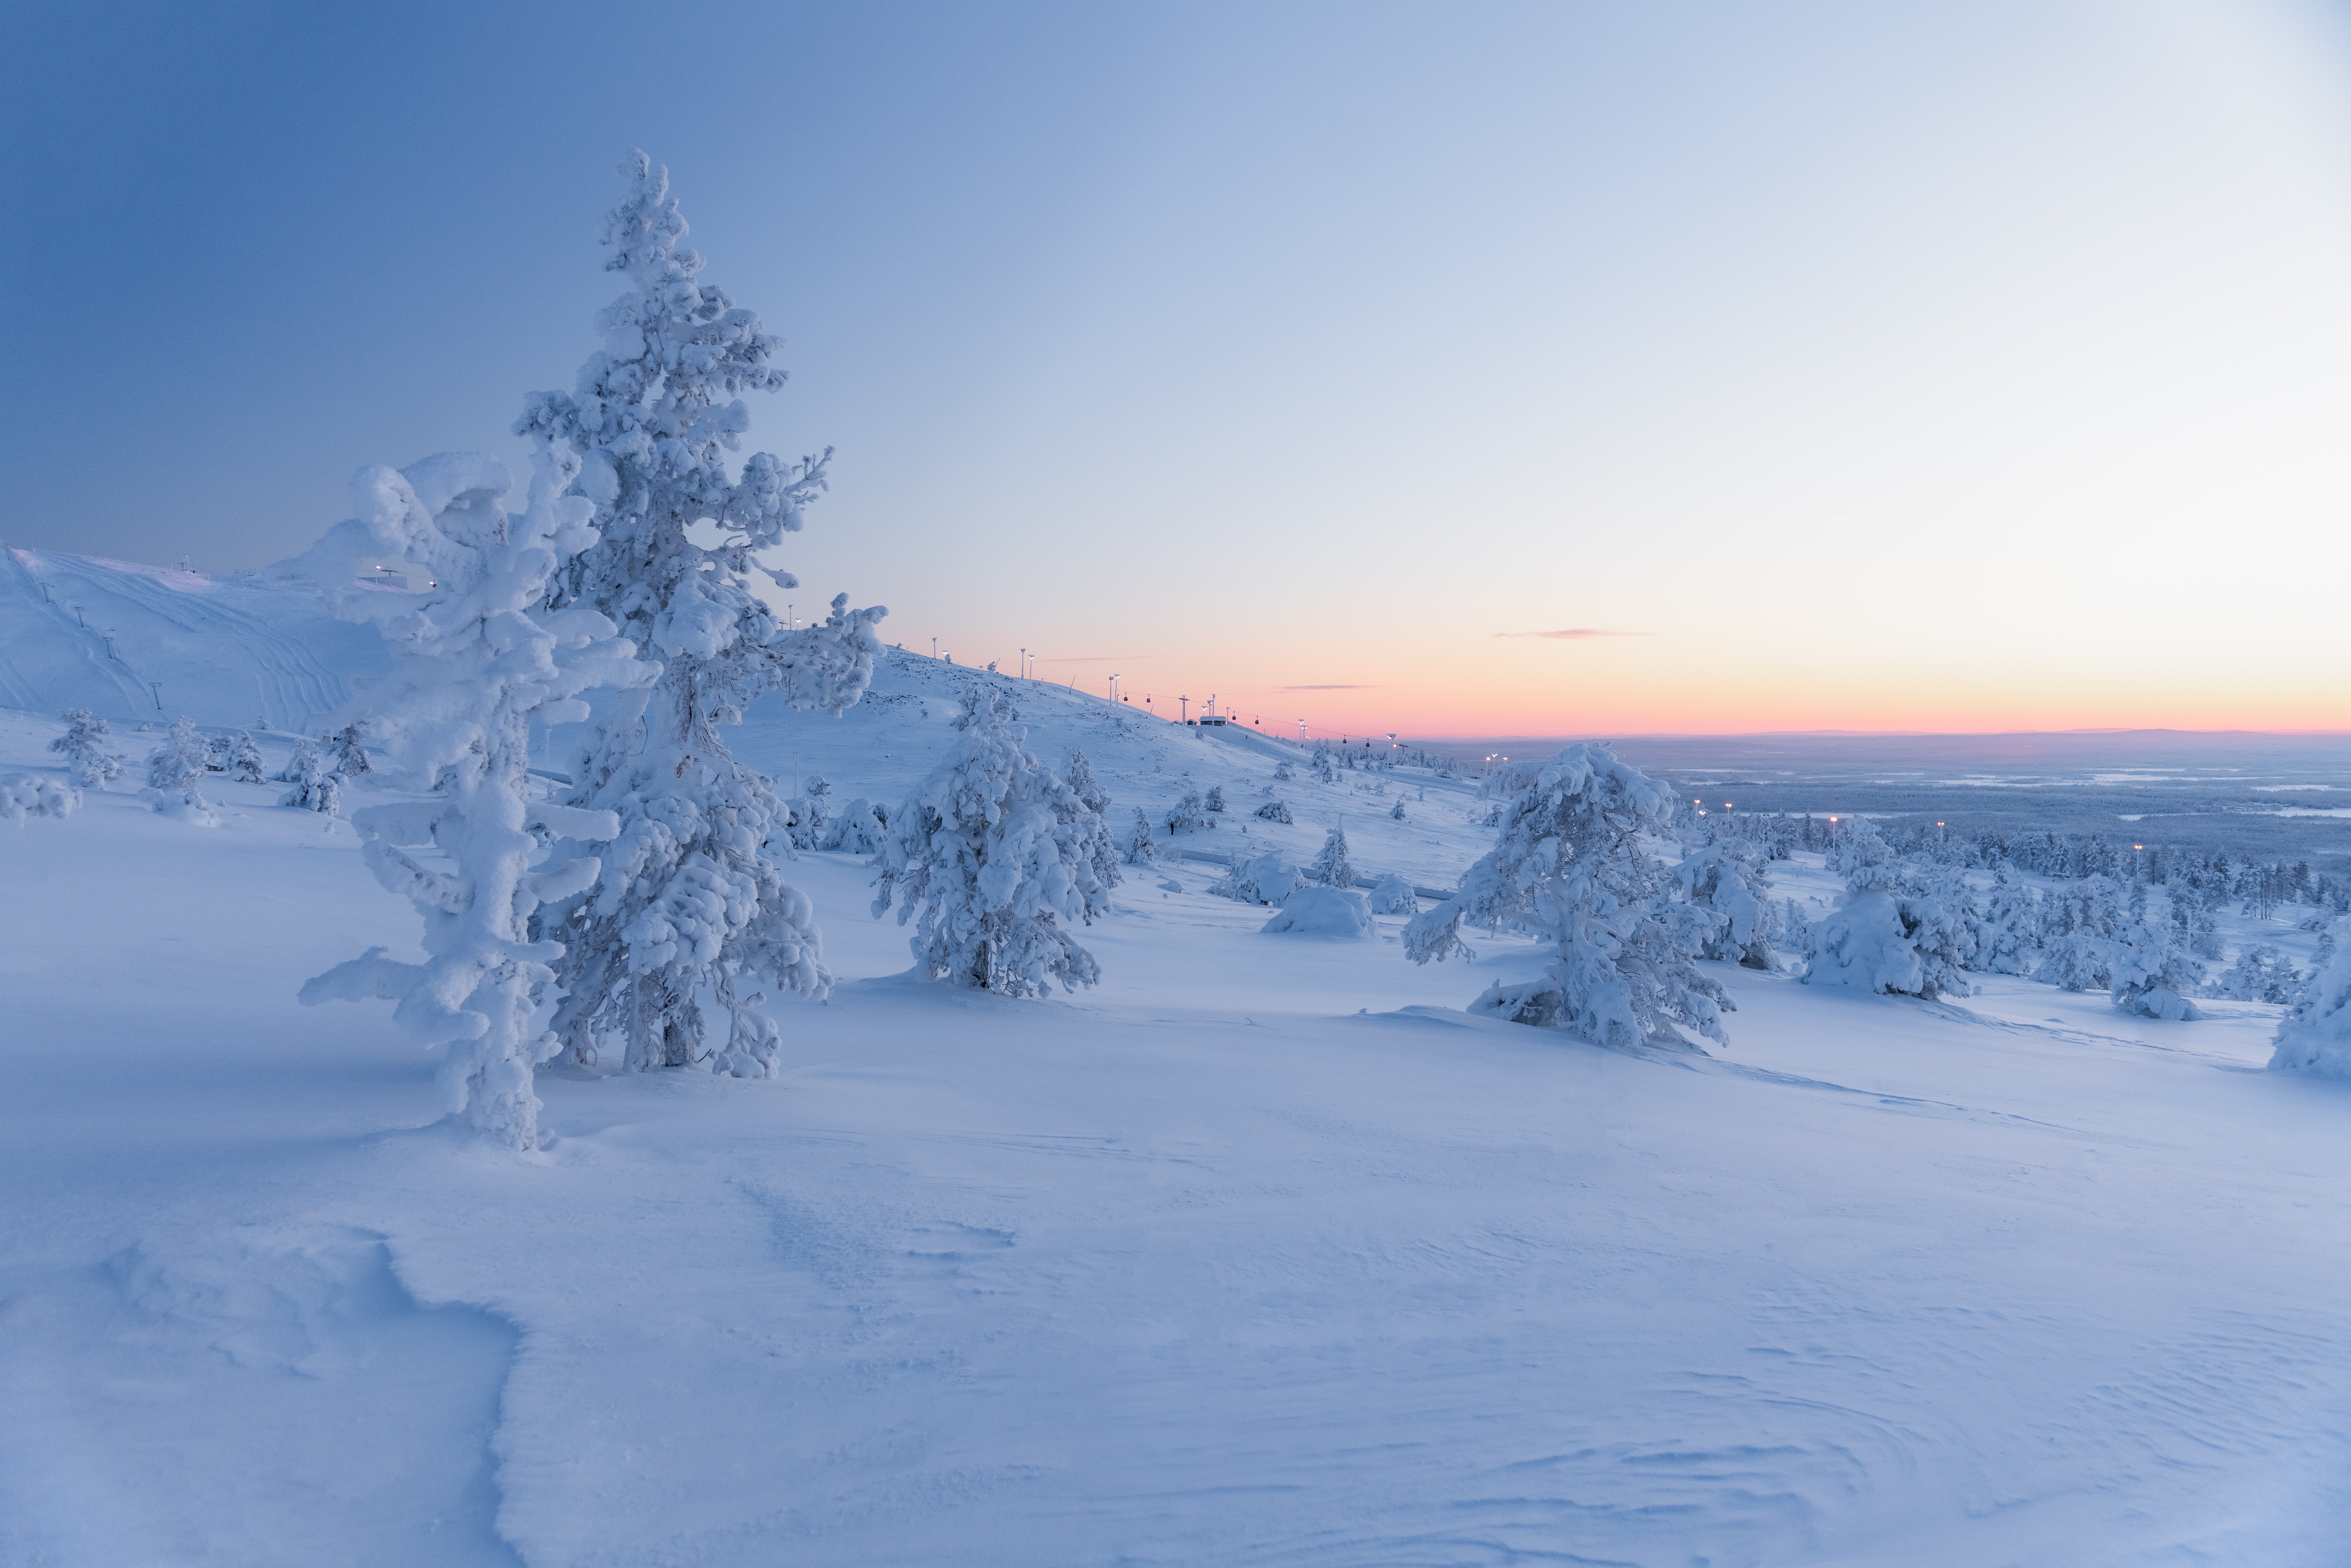 Winter 8k Ultra HD Wallpaper Forest Fir Tree Sky Snow